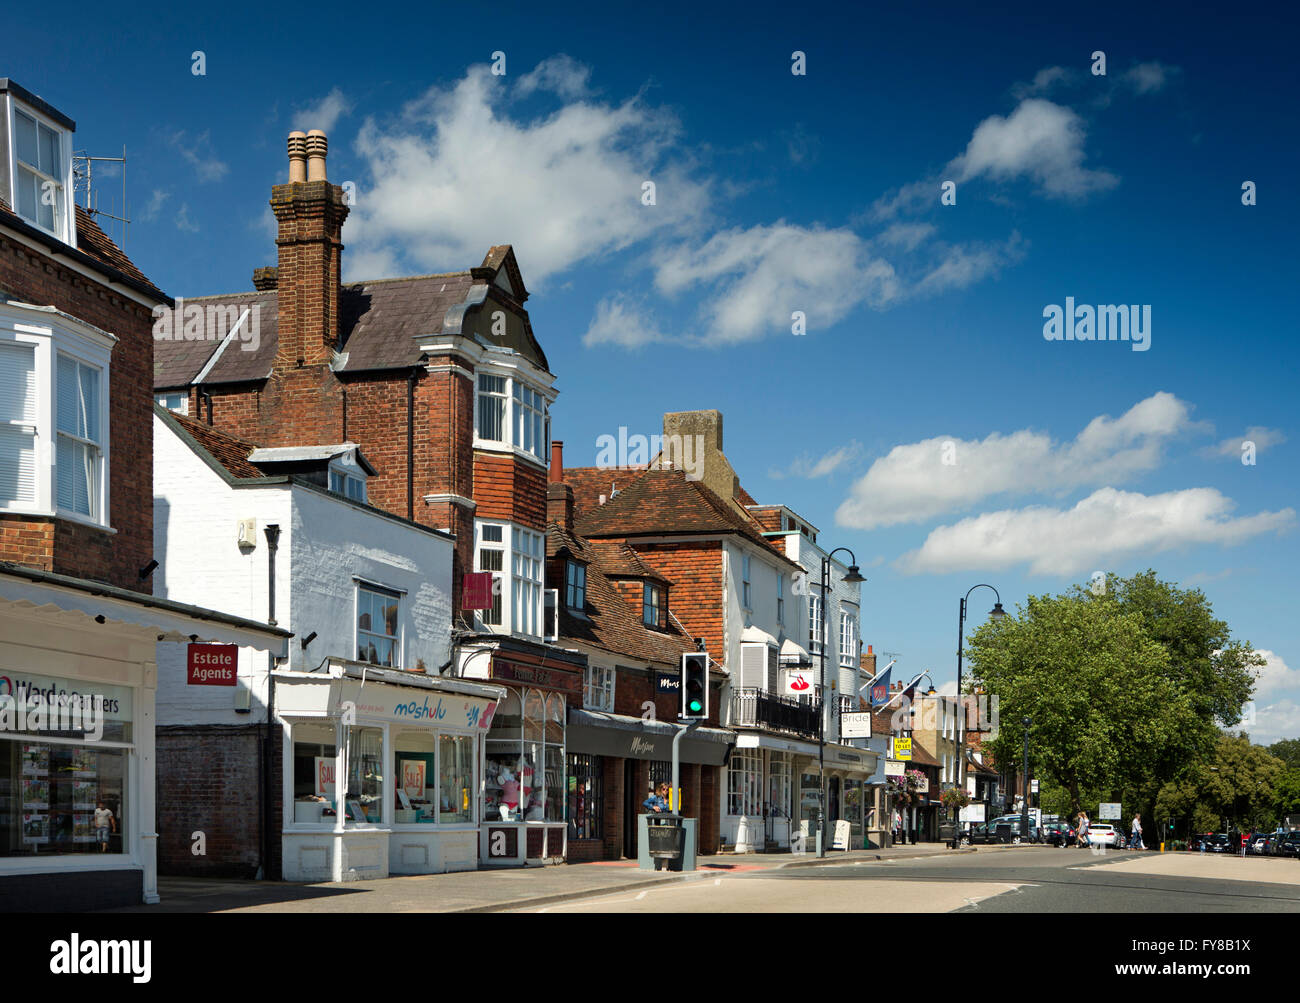 UK, Kent, Tenterden, High Street, shops in historic buildings Stock Photo